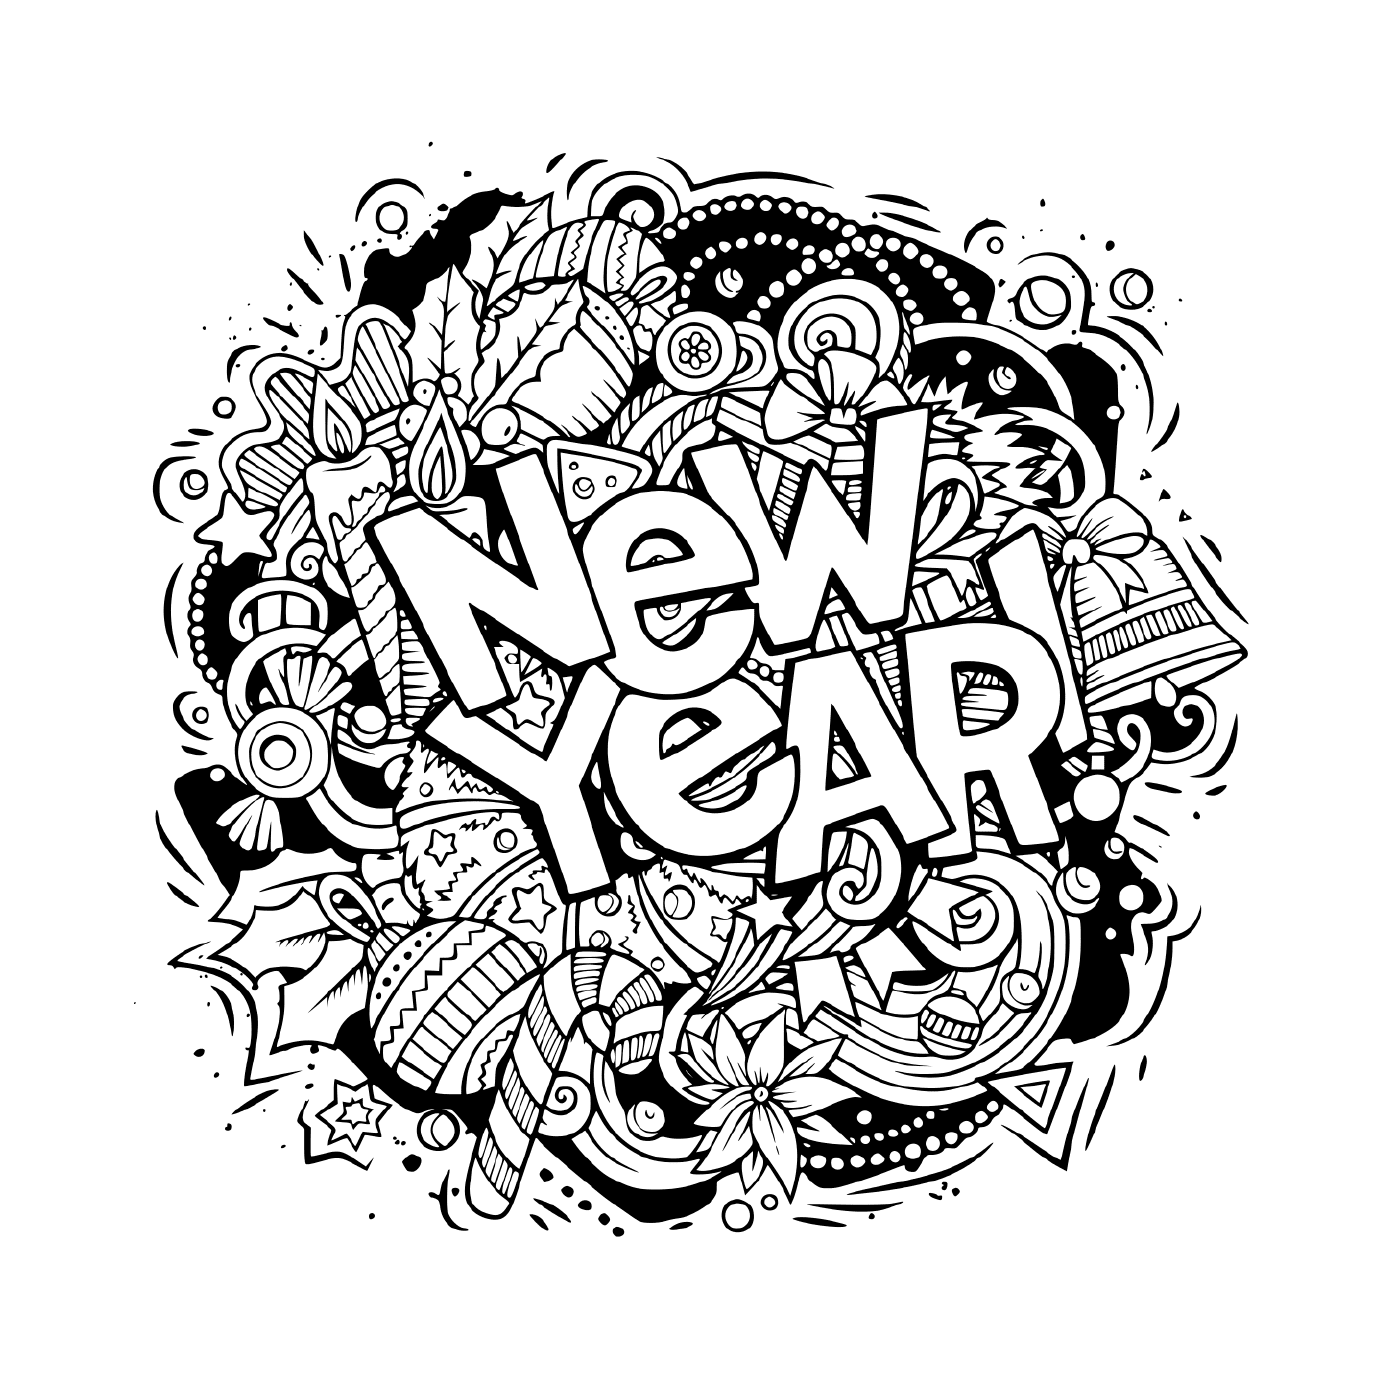   Doodles, objets et éléments pour le nouvel an 